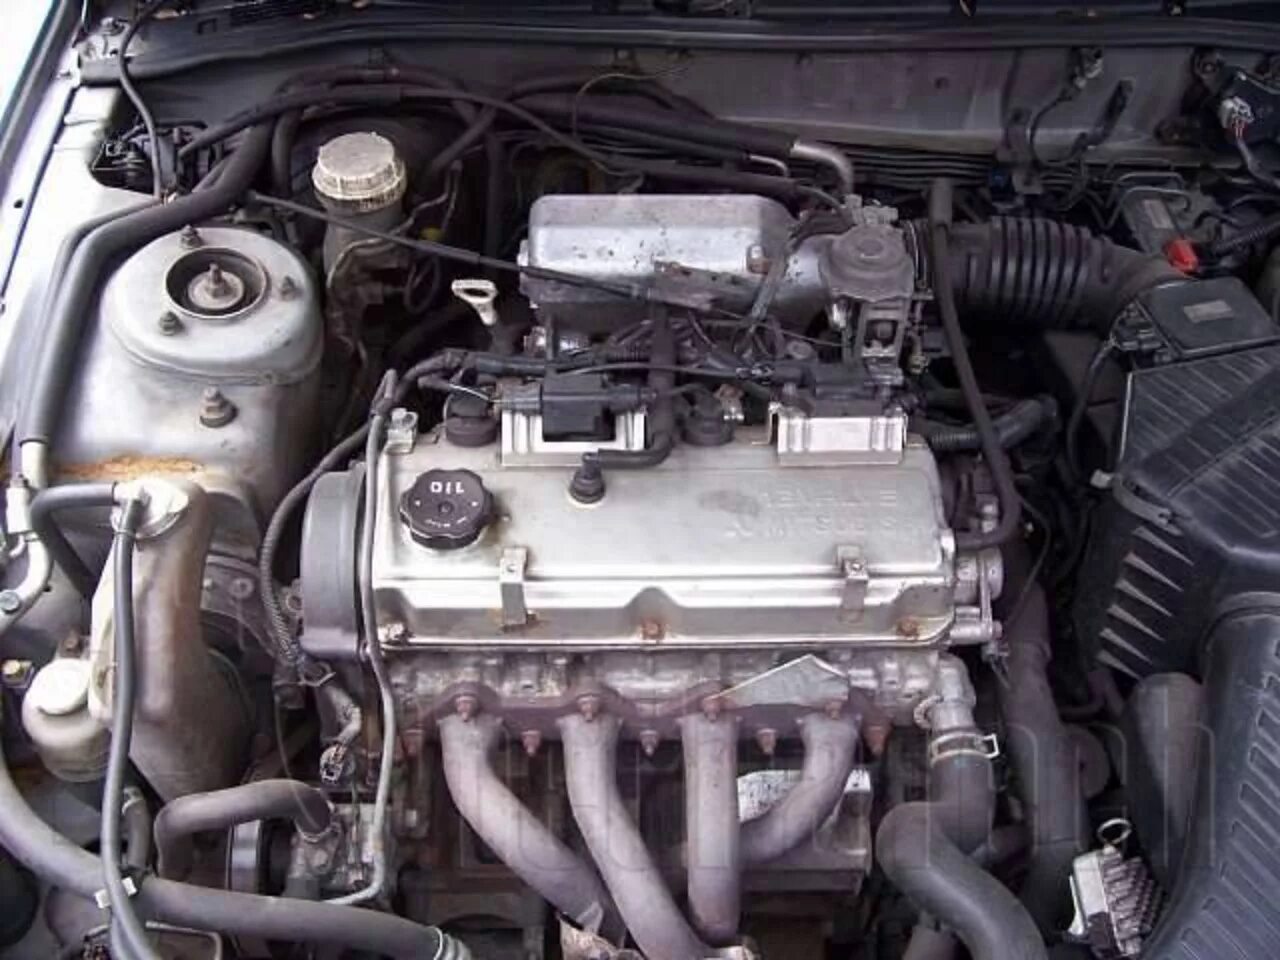 Мотор Mitsubishi Galant g 4 63. Двигатель 4g63 Mitsubishi Galant. Мотор 2.4 Митсубиси Галант. Митсубиси Галант 8 2.4 мотор. Двигатели mitsubishi galant